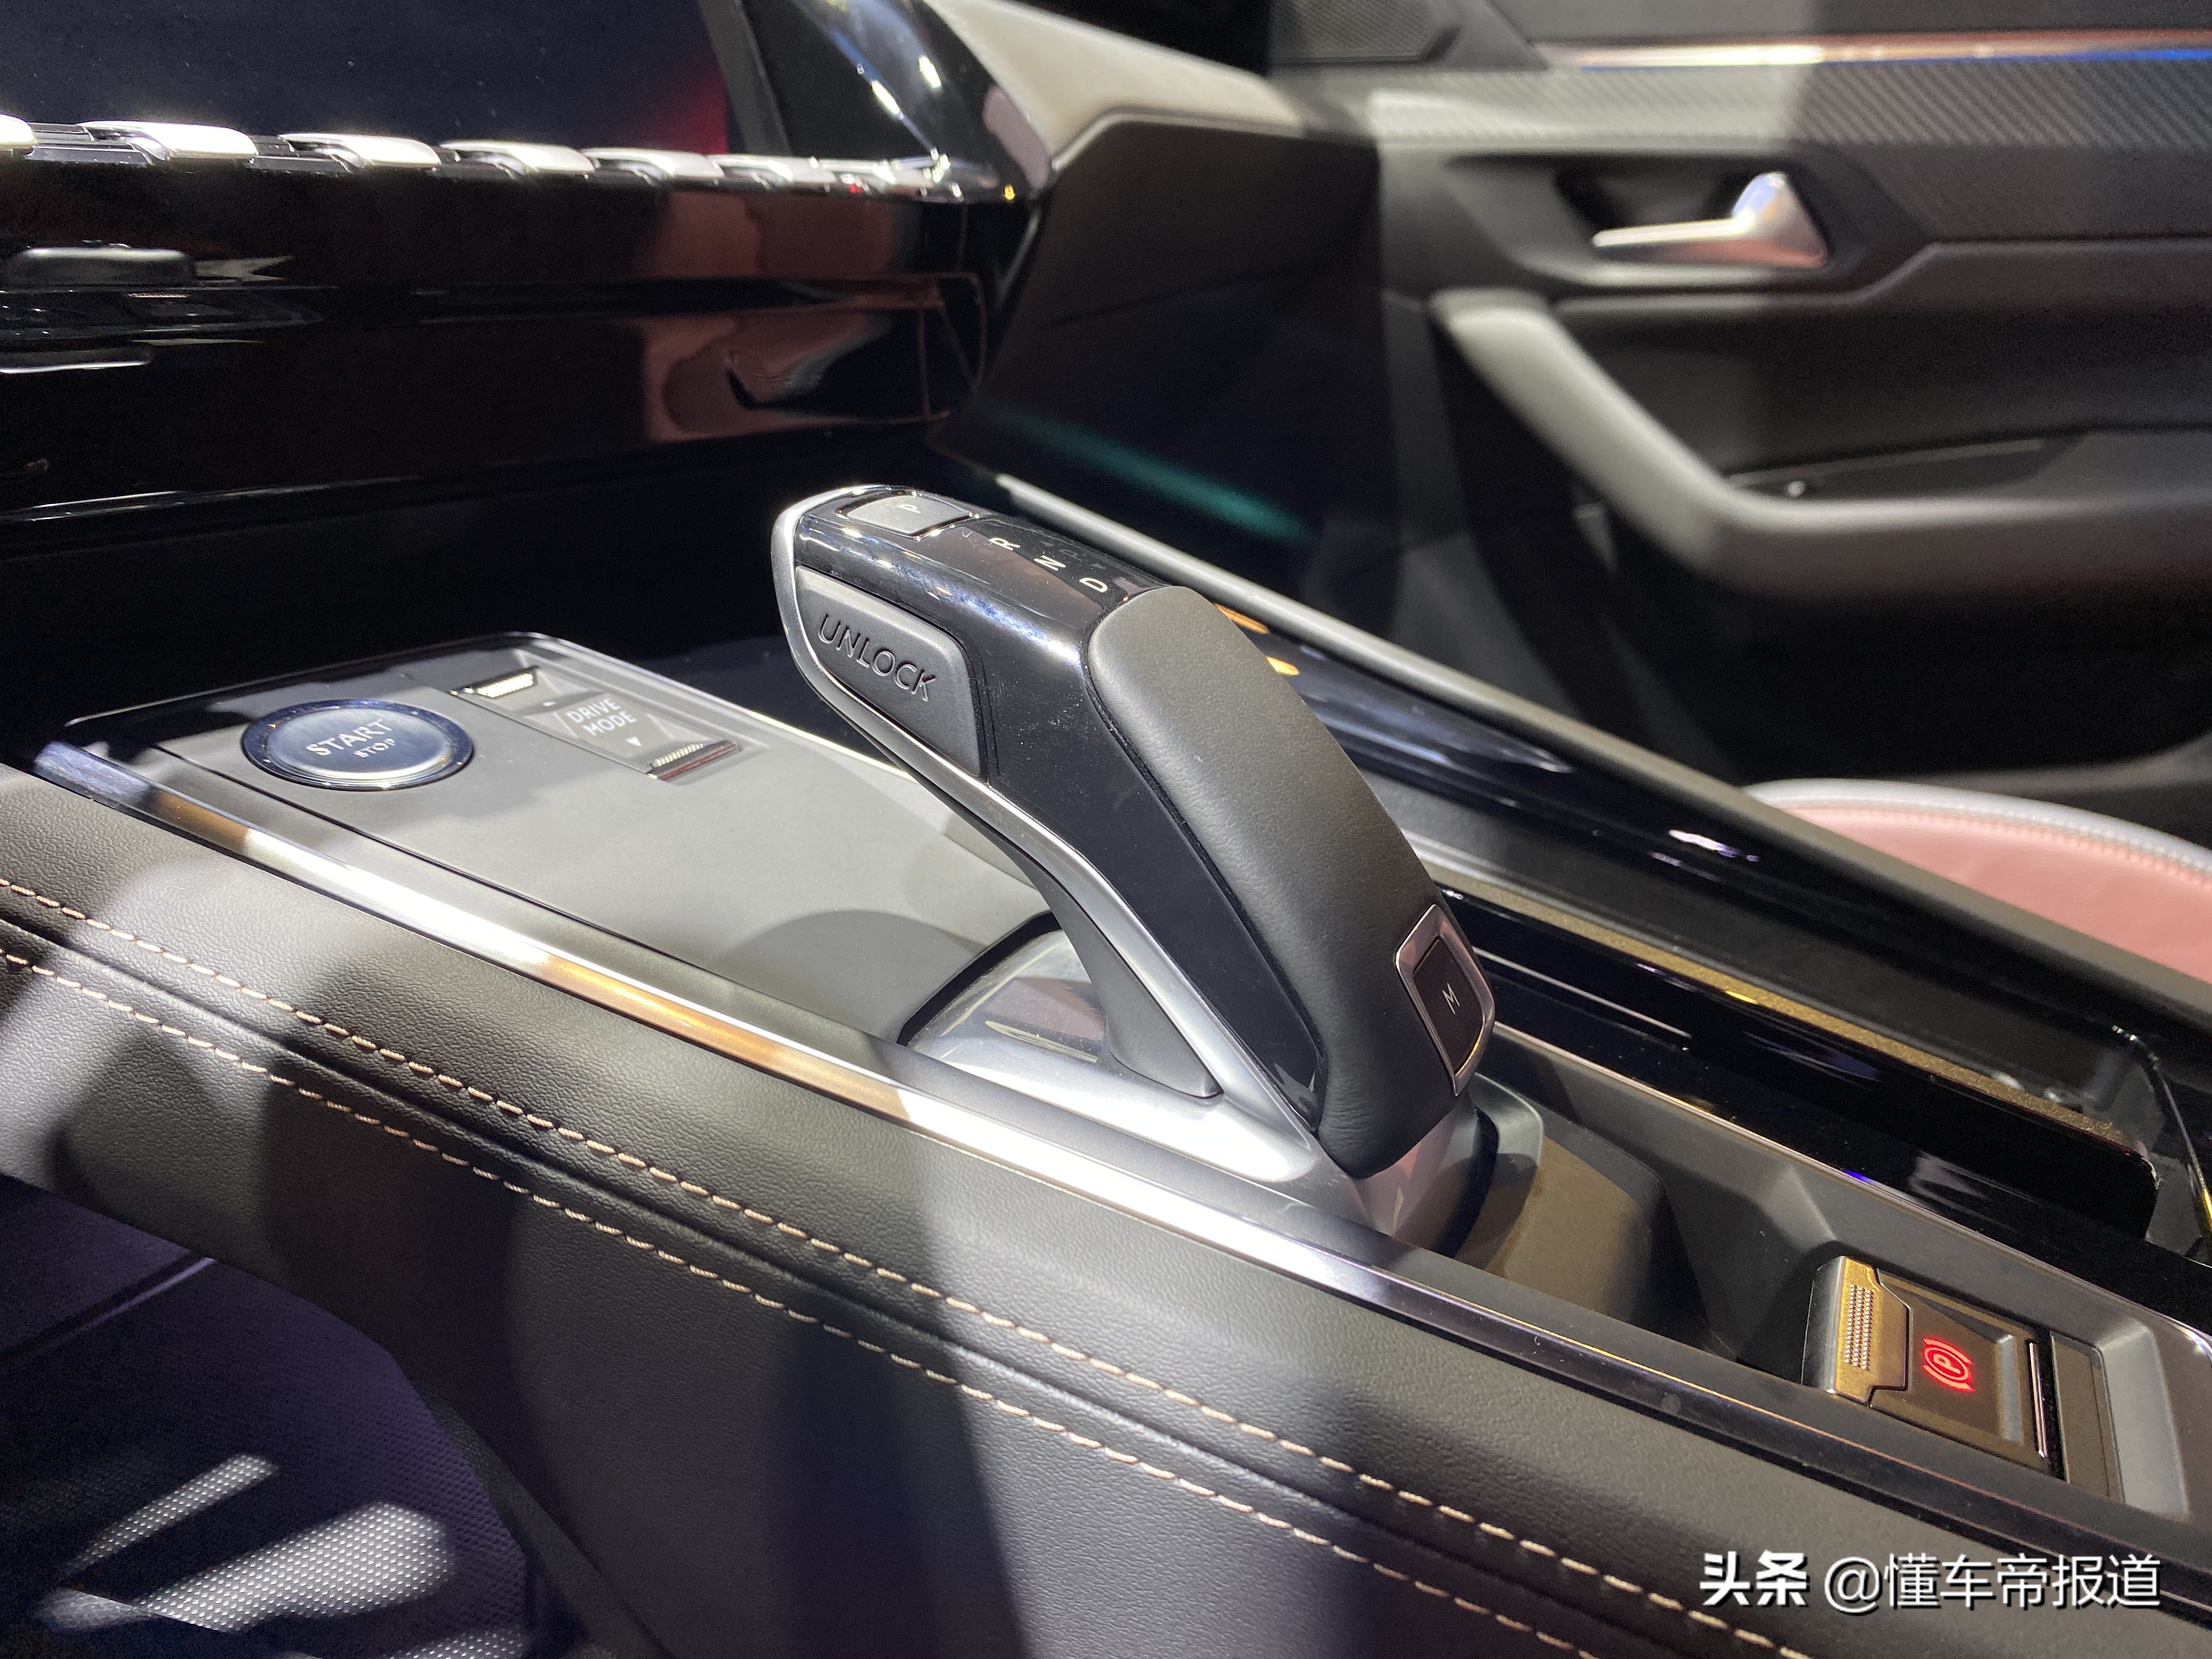 新车｜标致508L新款亮相北京车展，新增驭动版车型